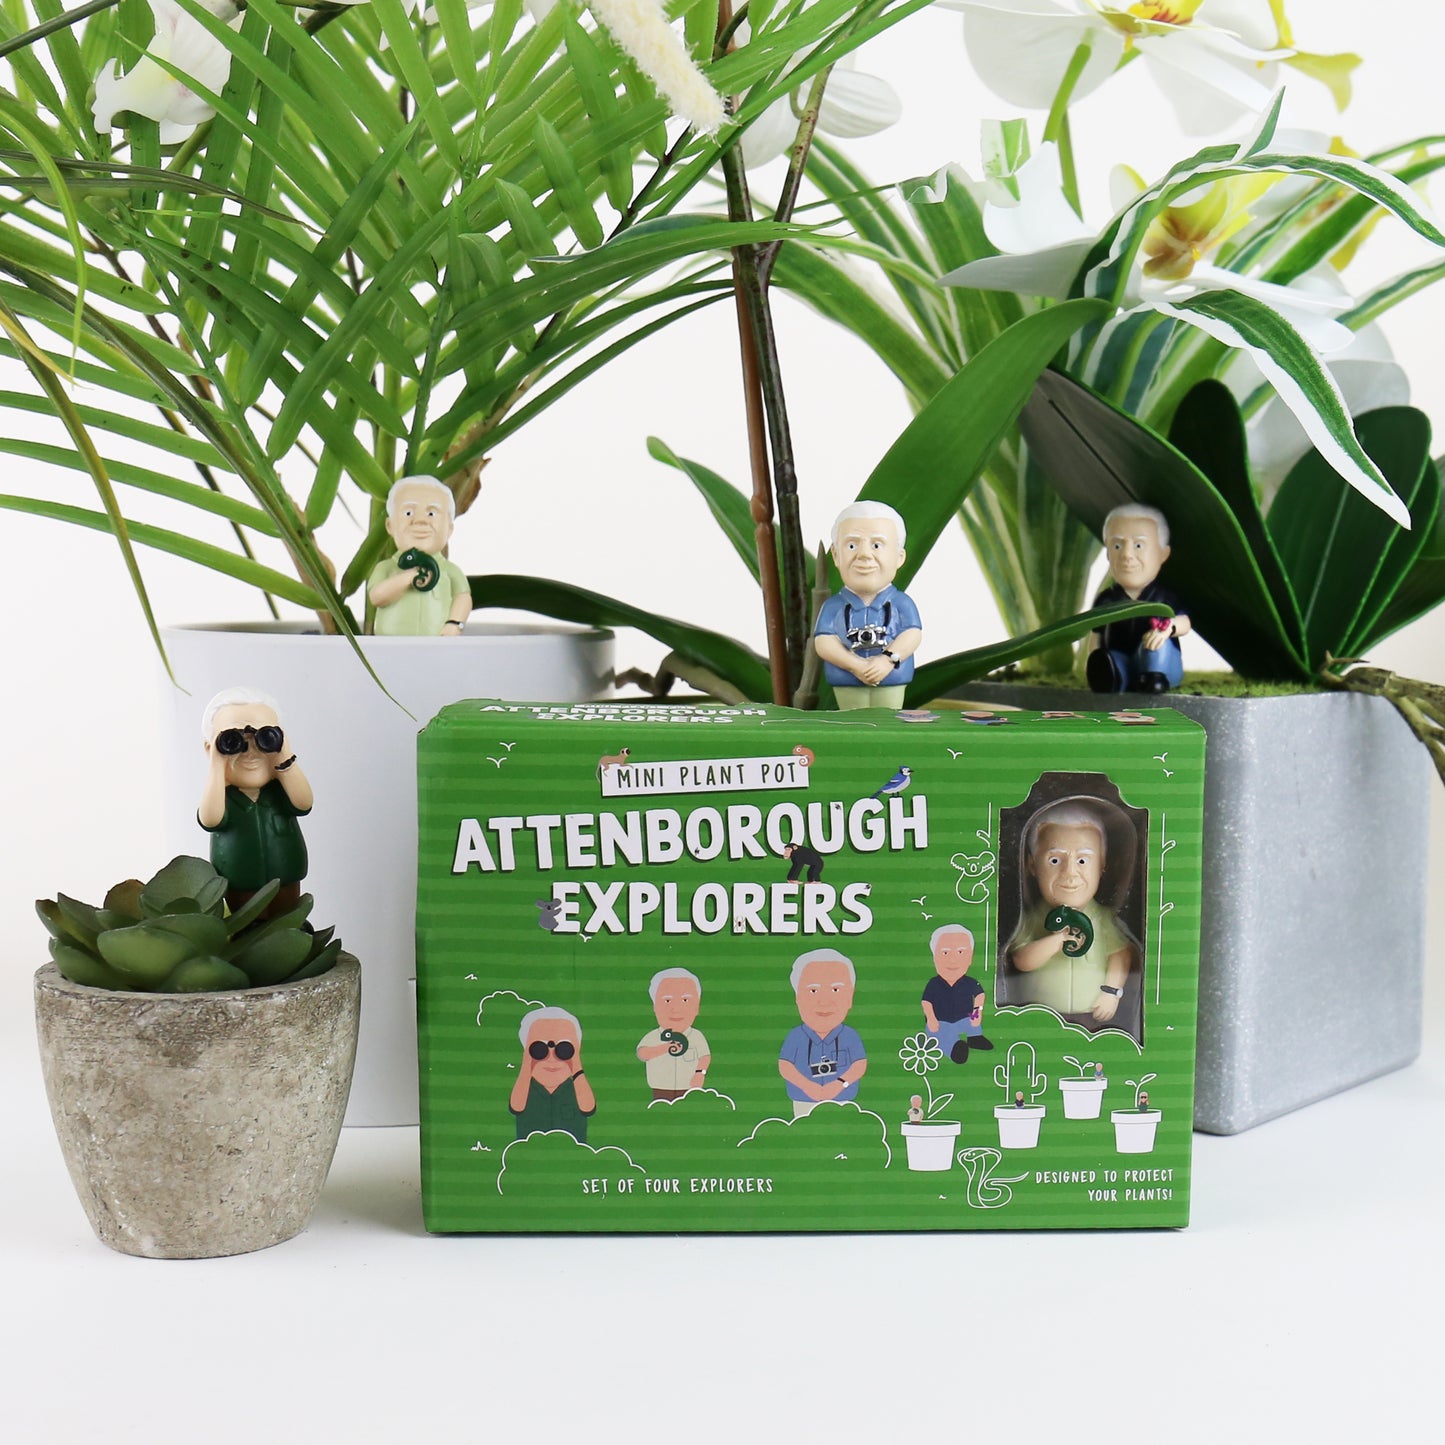 Plantdecoratie Attenborough Explorers - Gift Republic